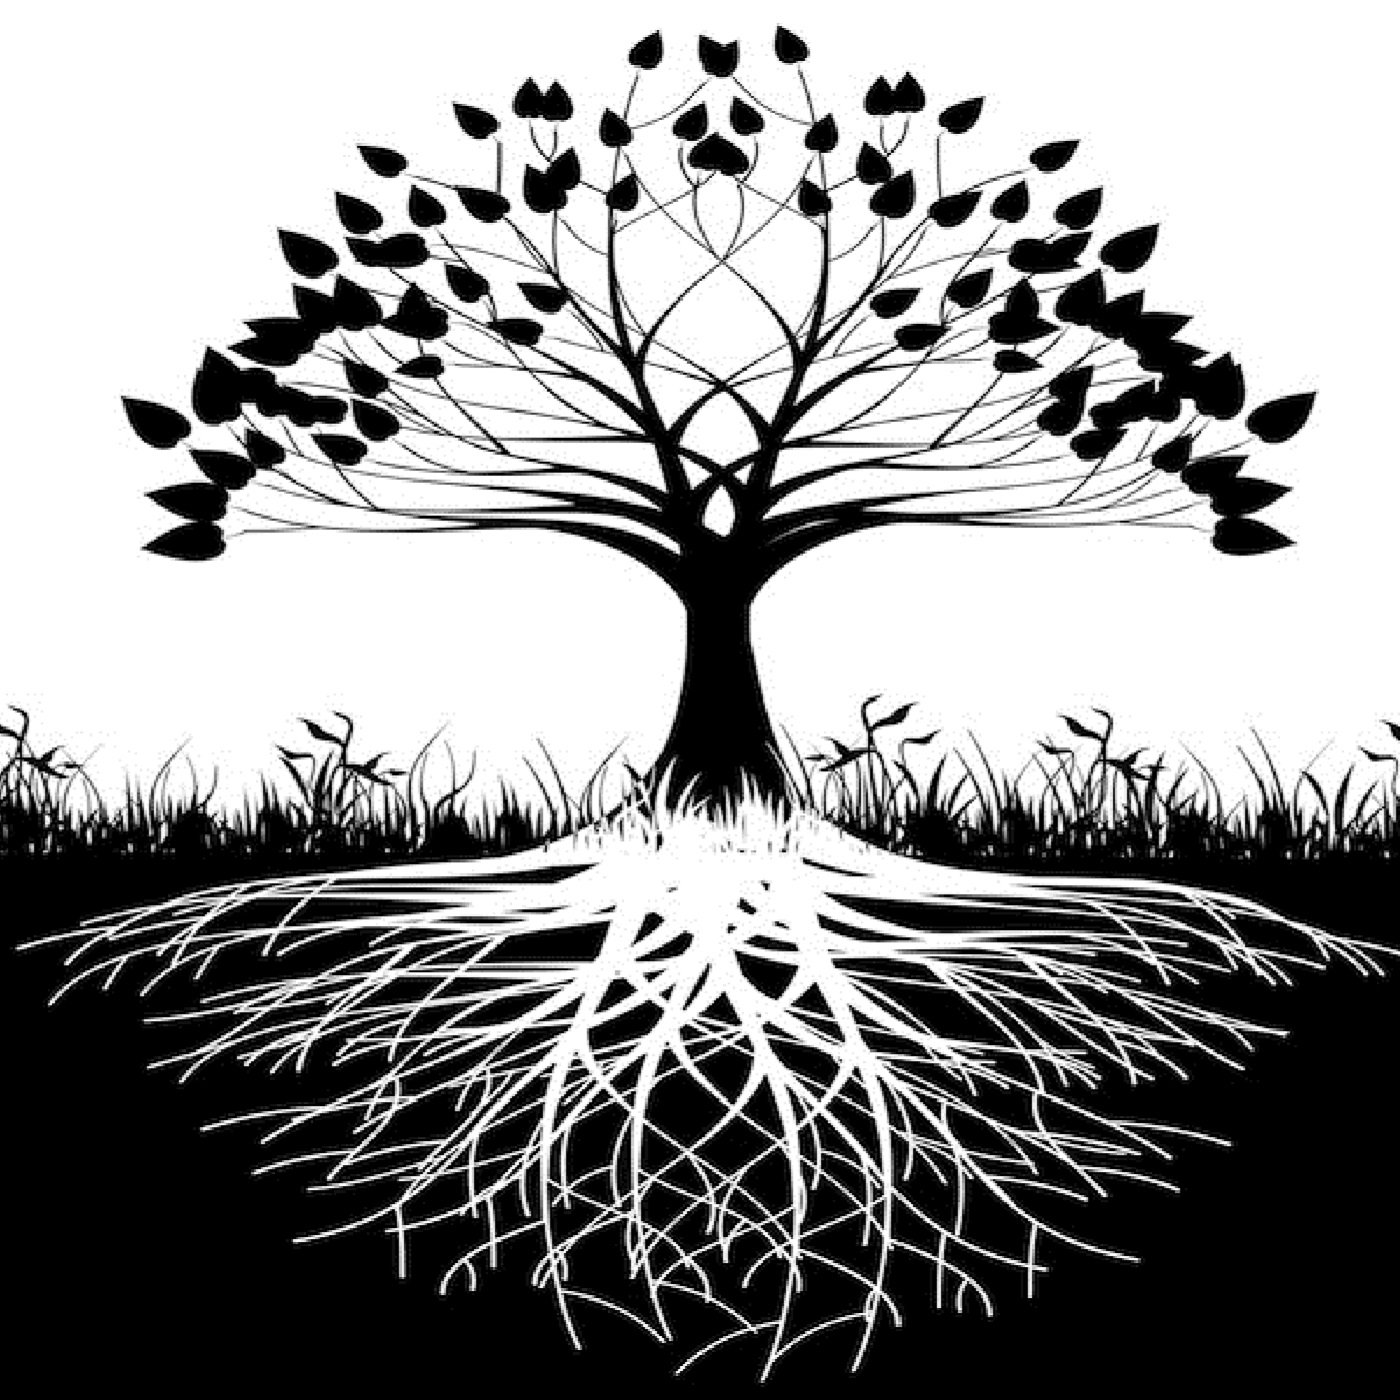 Корни черно белая. "Tree of Life" ("дерево жизни") by degree. Силуэт дерева. Дерево эскиз. Дерево с корнями силуэт.